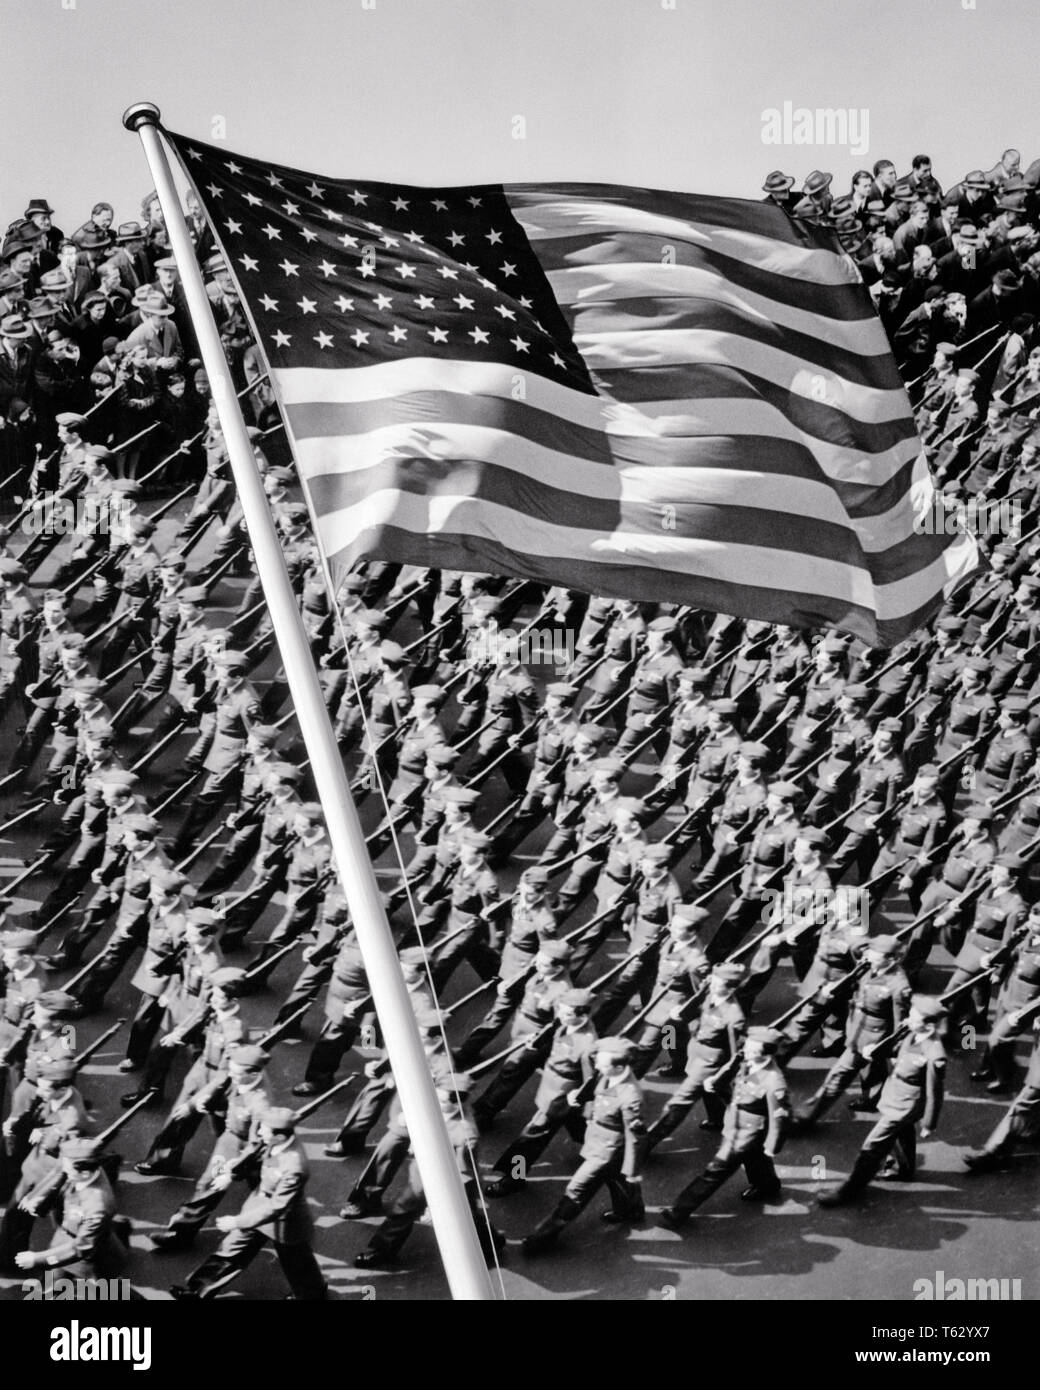 1940 NEW YORK CITY PLAN DES TROUPES d'hommes marchant avec USA 48 étoiles superposées DU PAVILLON EN PREMIER PLAN - q42140 CPC001 B&W SPIRITUALITÉ HARS LIBERTÉ SUCCÈS HIGH ANGLE FORCE VICTOIRE COURAGE EXCITATION PUISSANT LEADERSHIP DIRECTION GOTHAM-GUERRES SECONDE GUERRE MONDIALE DE LA FIERTÉ LA SECONDE GUERRE MONDIALE LA SECONDE GUERRE MONDIALE EN D'AUTORITÉ POLITIQUE PROFESSIONS NYC NEW YORK CONCEPTUELLE DES UNIFORMES DES TROUPES élégantes villes WORLD WAR 2 étoiles 48 NEW YORK CITY HONNEUR PRECISION RED WHITE AND BLUE STARS ET NOIR ET BLANC à l'ancienne d'avant-plan droit superpose Banque D'Images